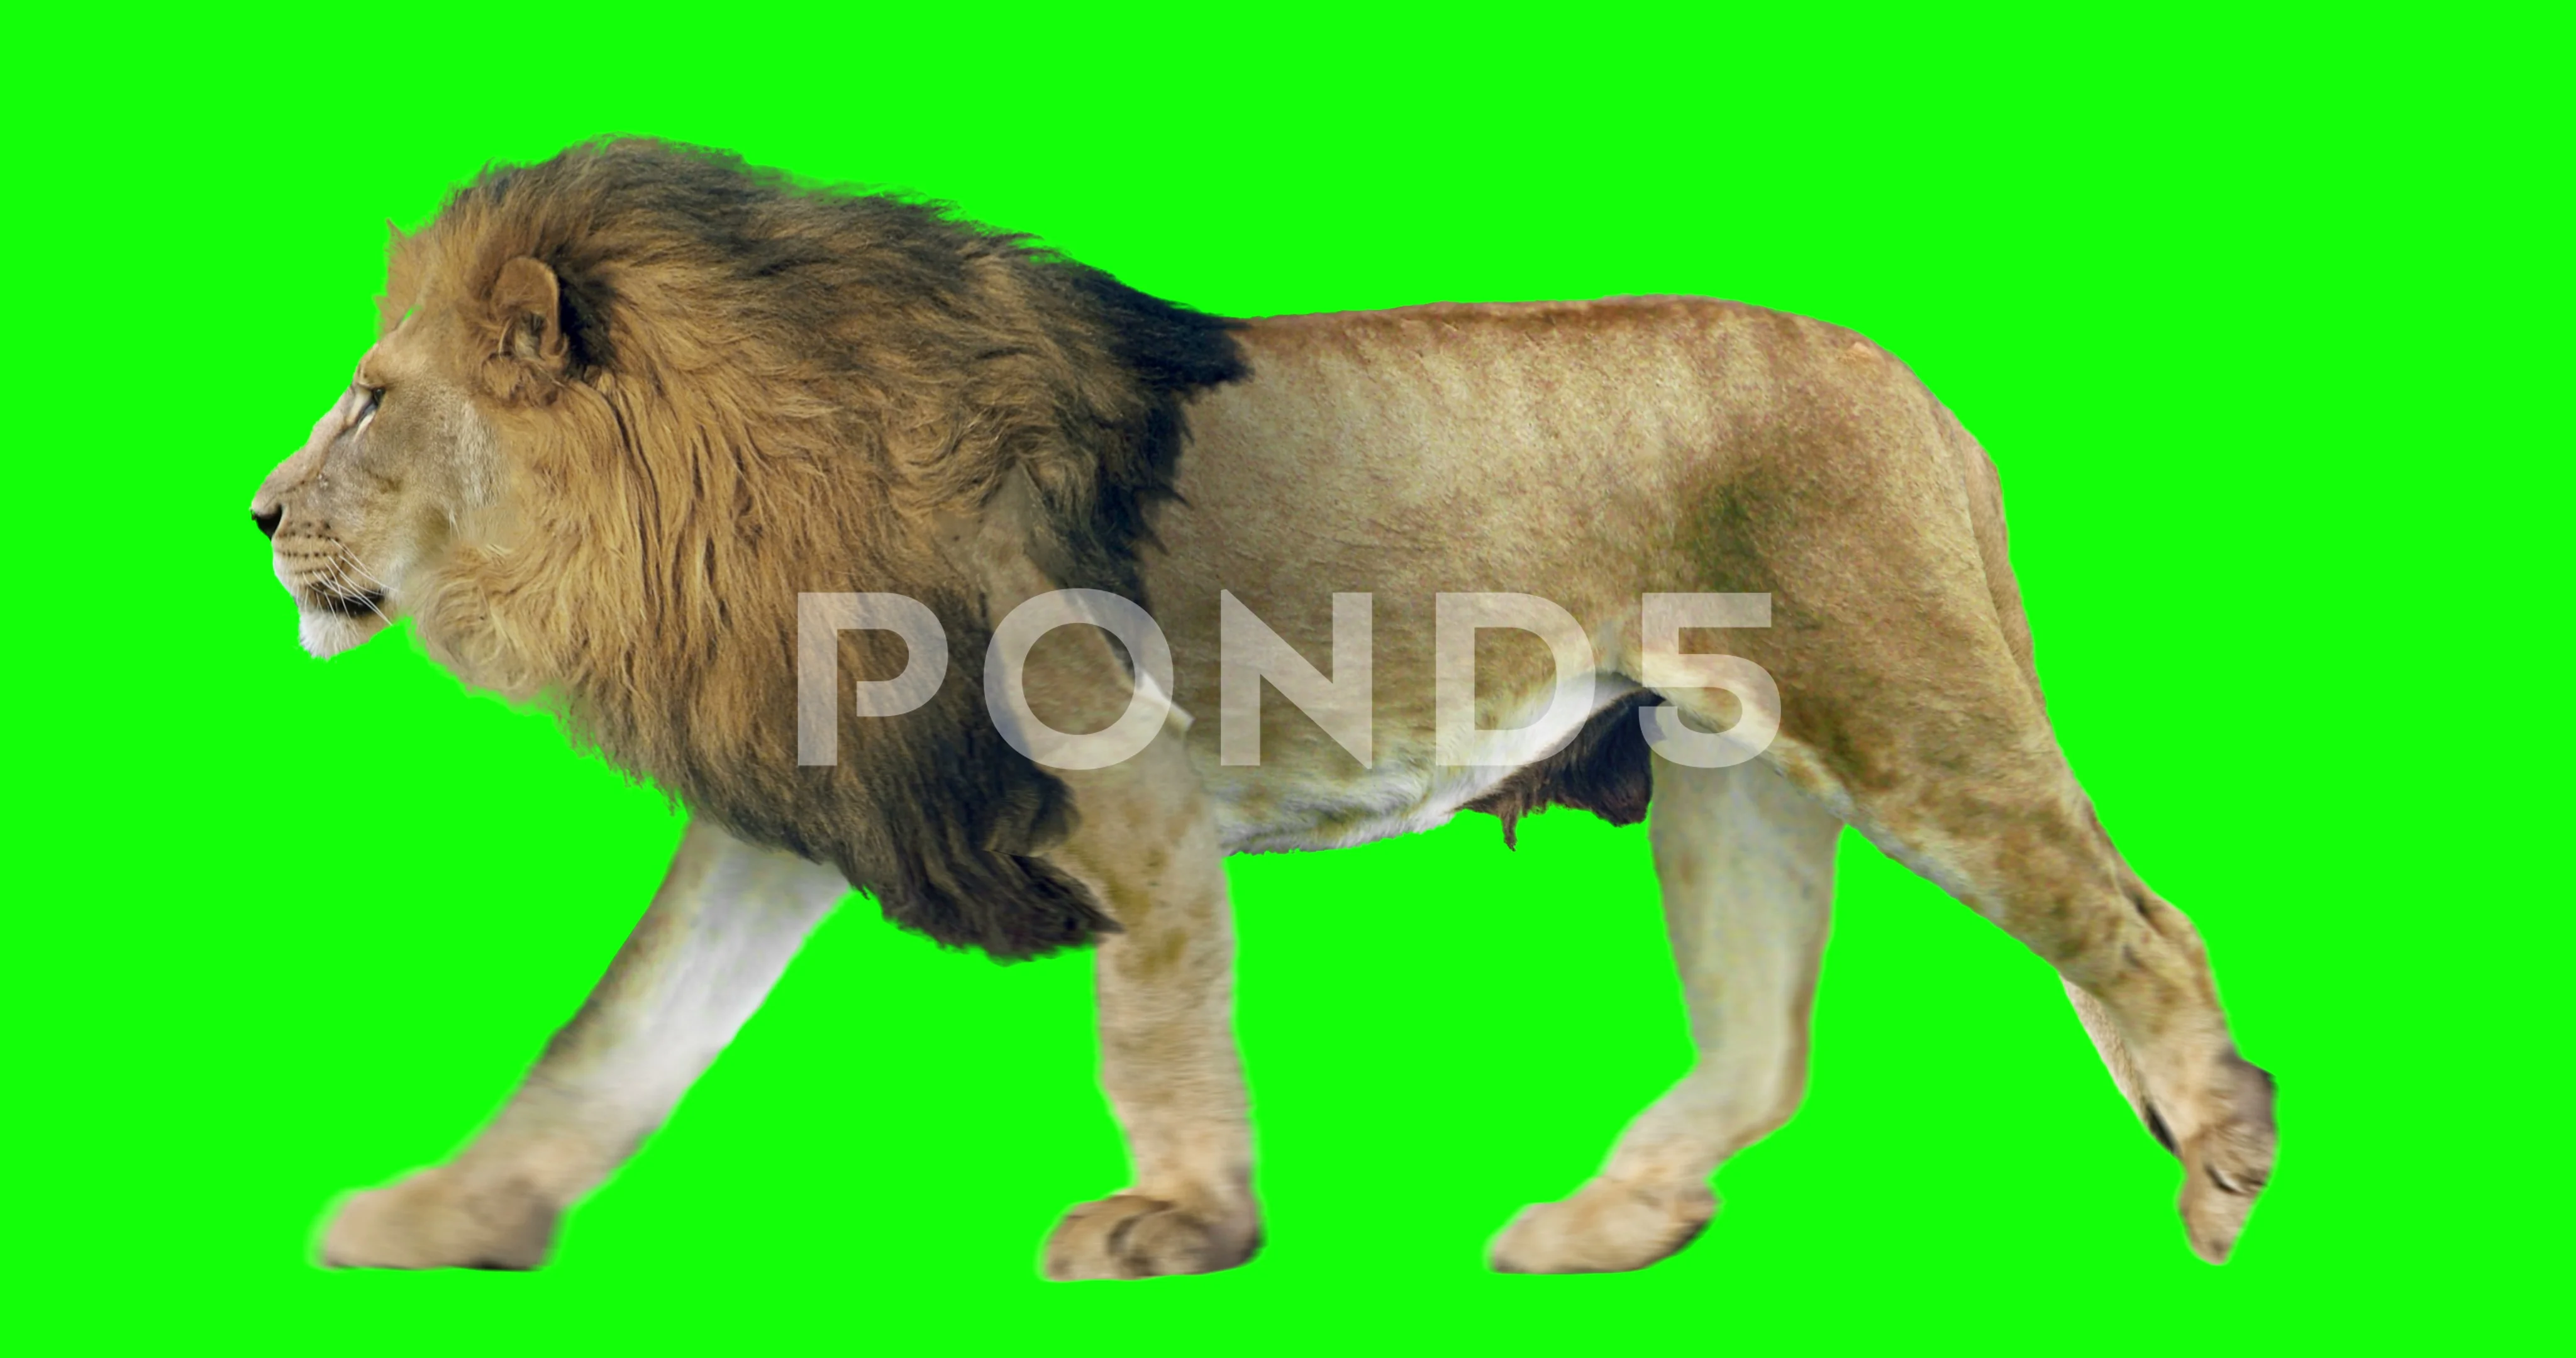 Bạn muốn tạo ra video động vật hoang dã đầy trải nghiệm? Hãy xem ngay hình ảnh về những chú sư tử đi bộ trên màn hình xanh trong video Lion Walking on Green Screen này. Được quay từ góc độ đầy nghệ thuật, video này sẽ đem đến cho bạn những trải nghiệm thú vị nhất.